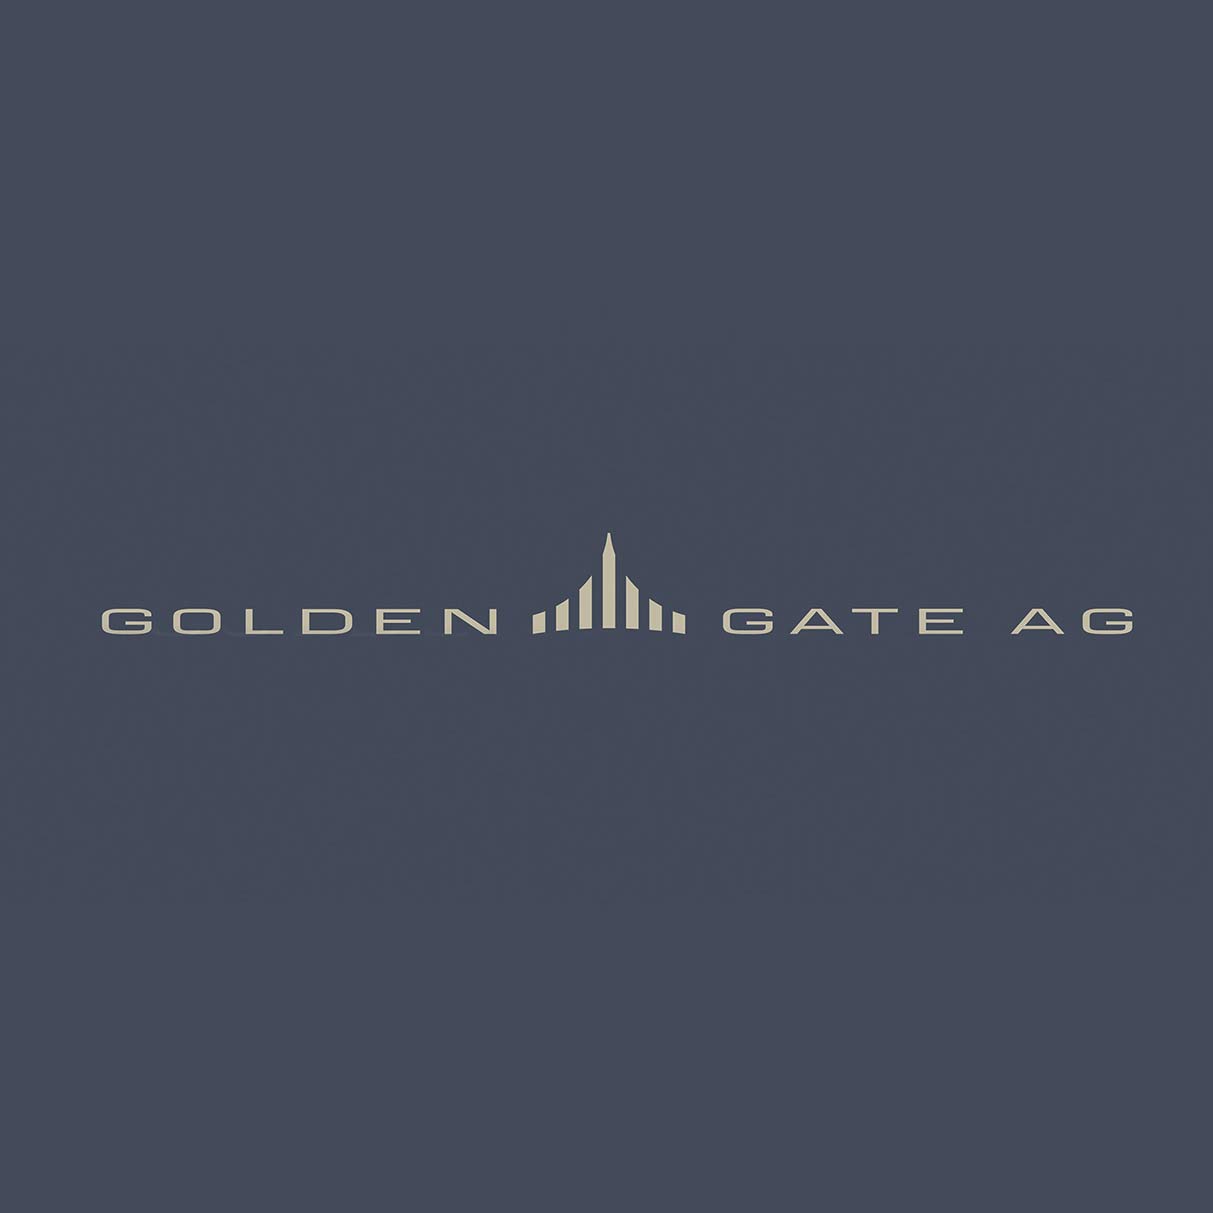 Golden Gate AG